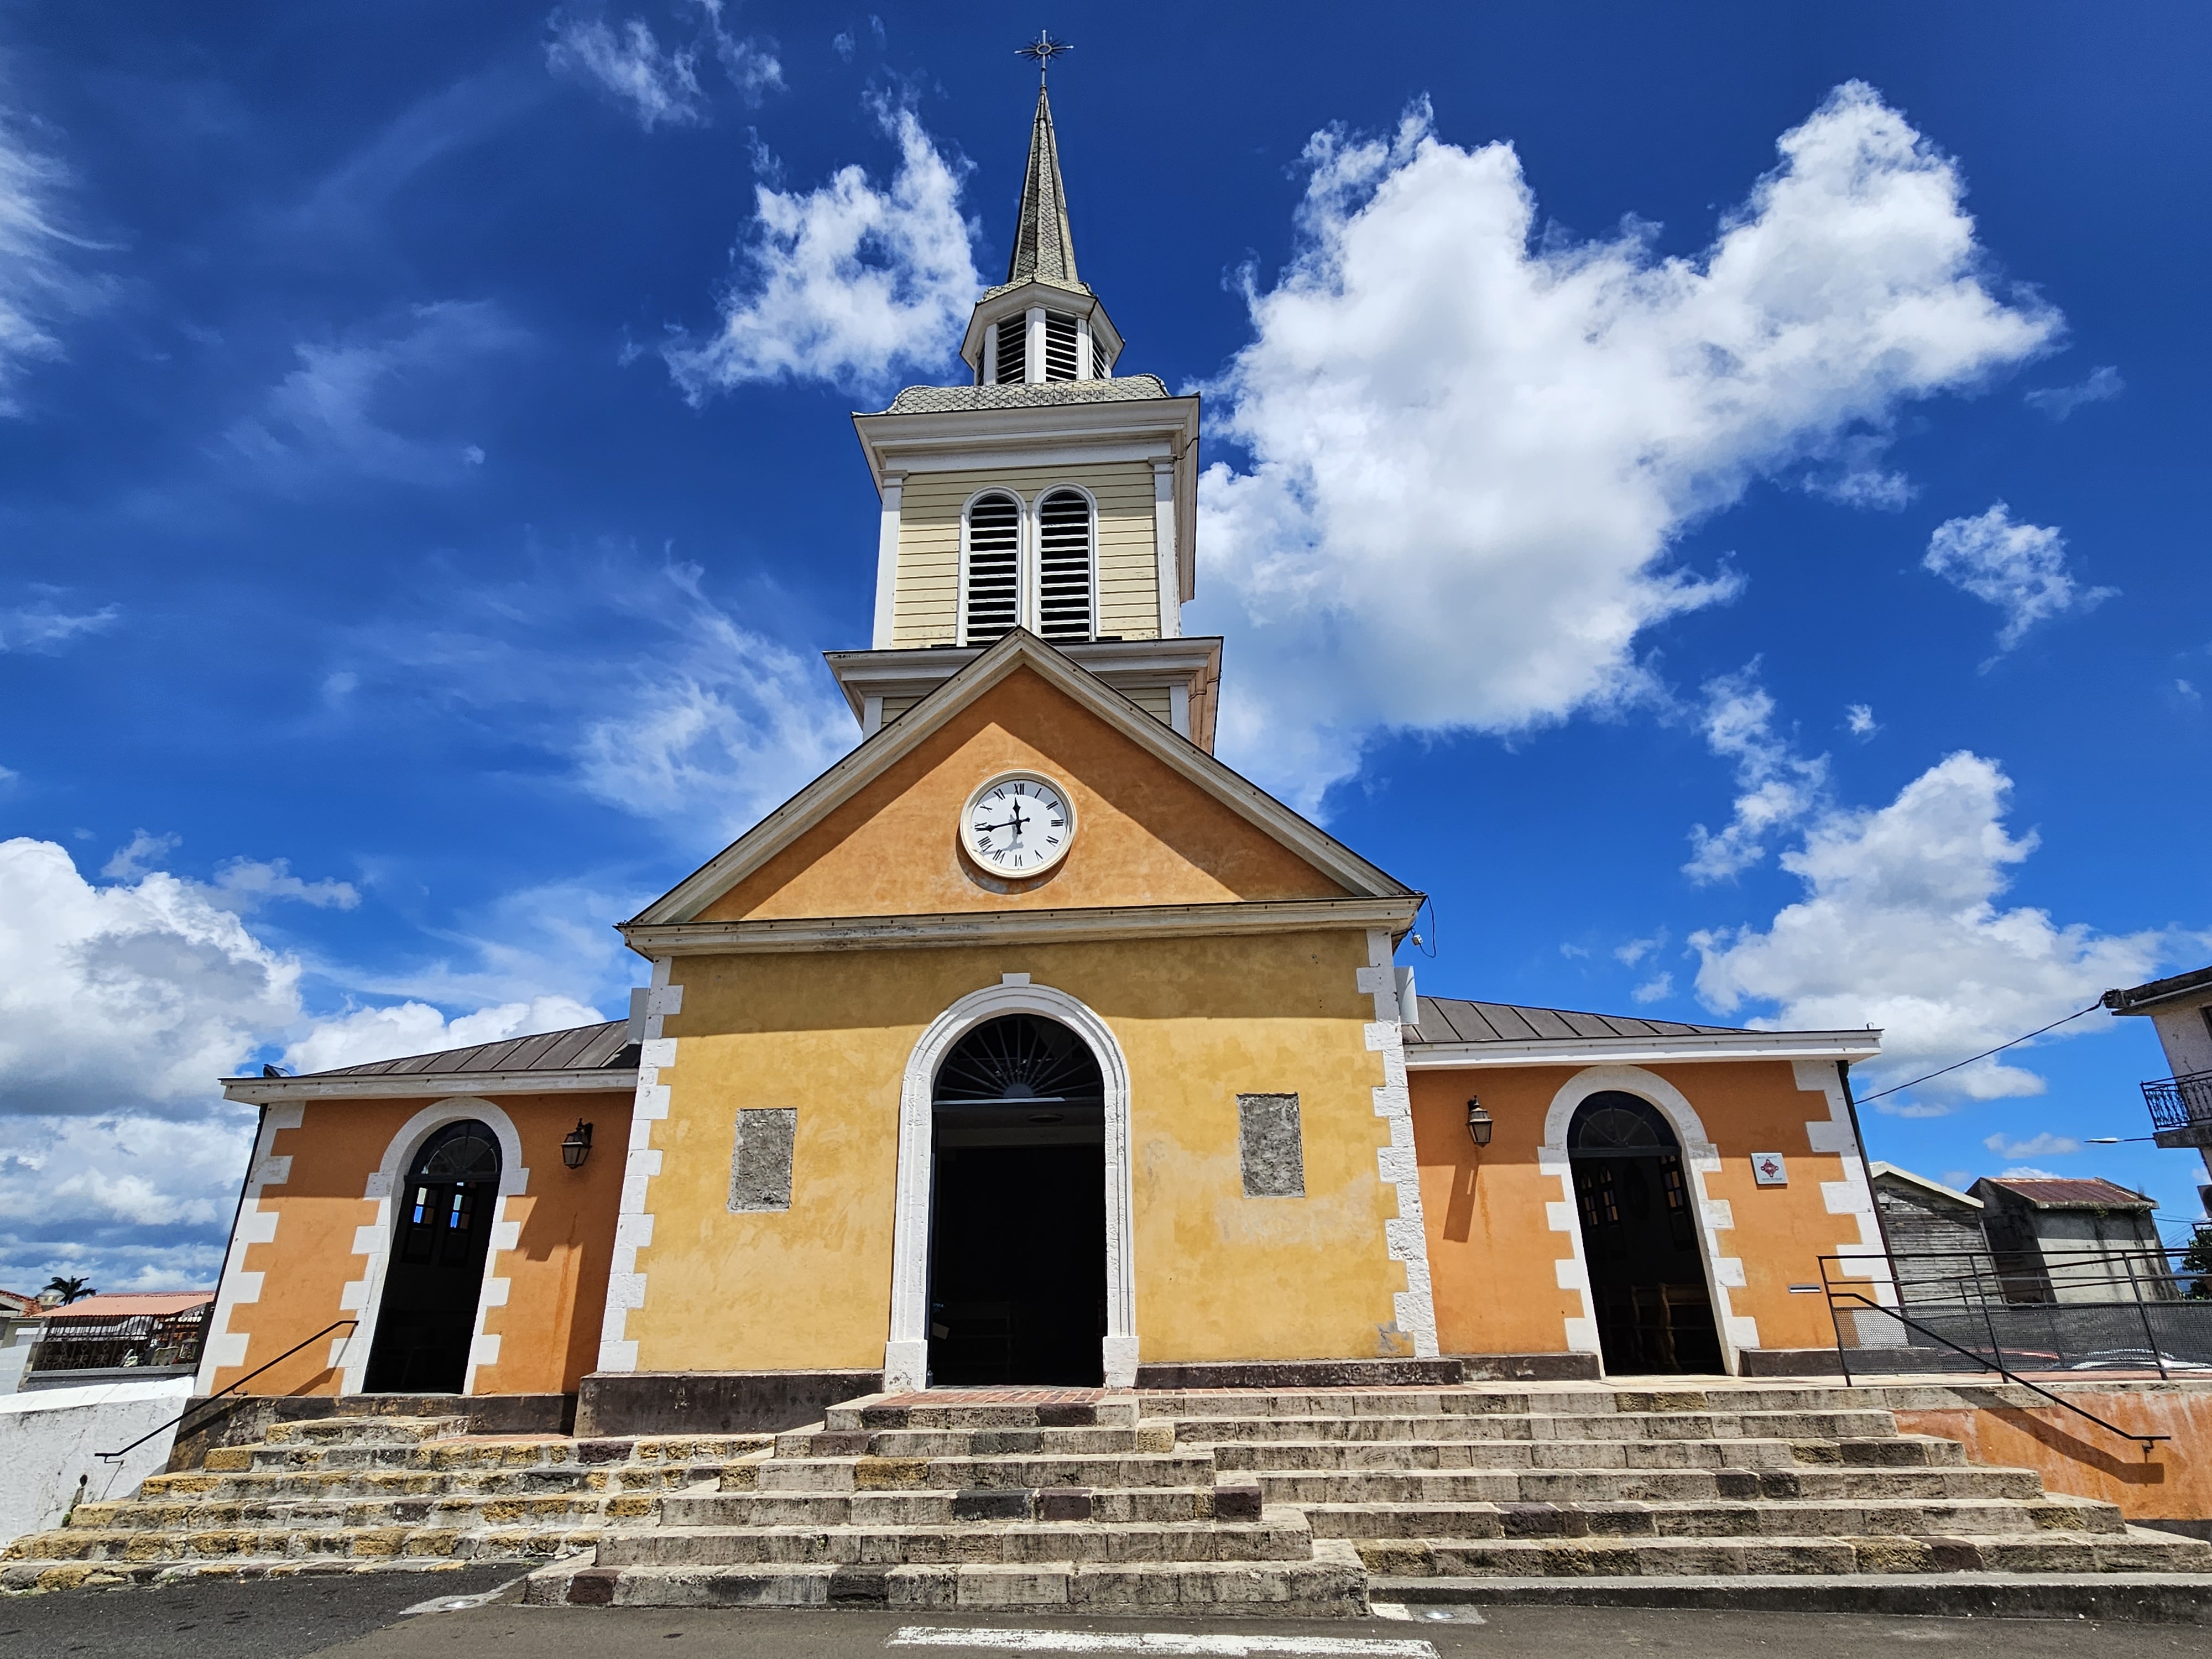     Des propos « inappropriés » voire racistes dénoncés à l’église des Trois-Îlets

